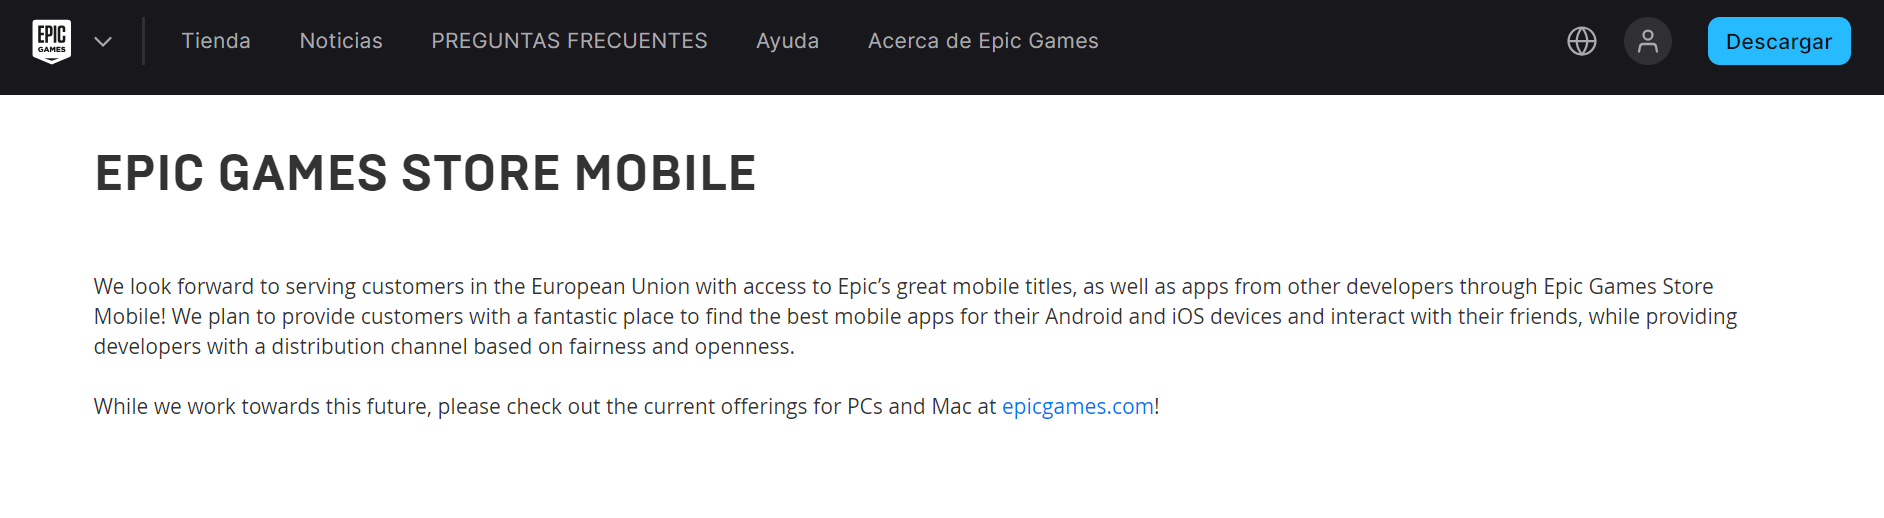 Negozio di giochi epici per dispositivi mobili per Android